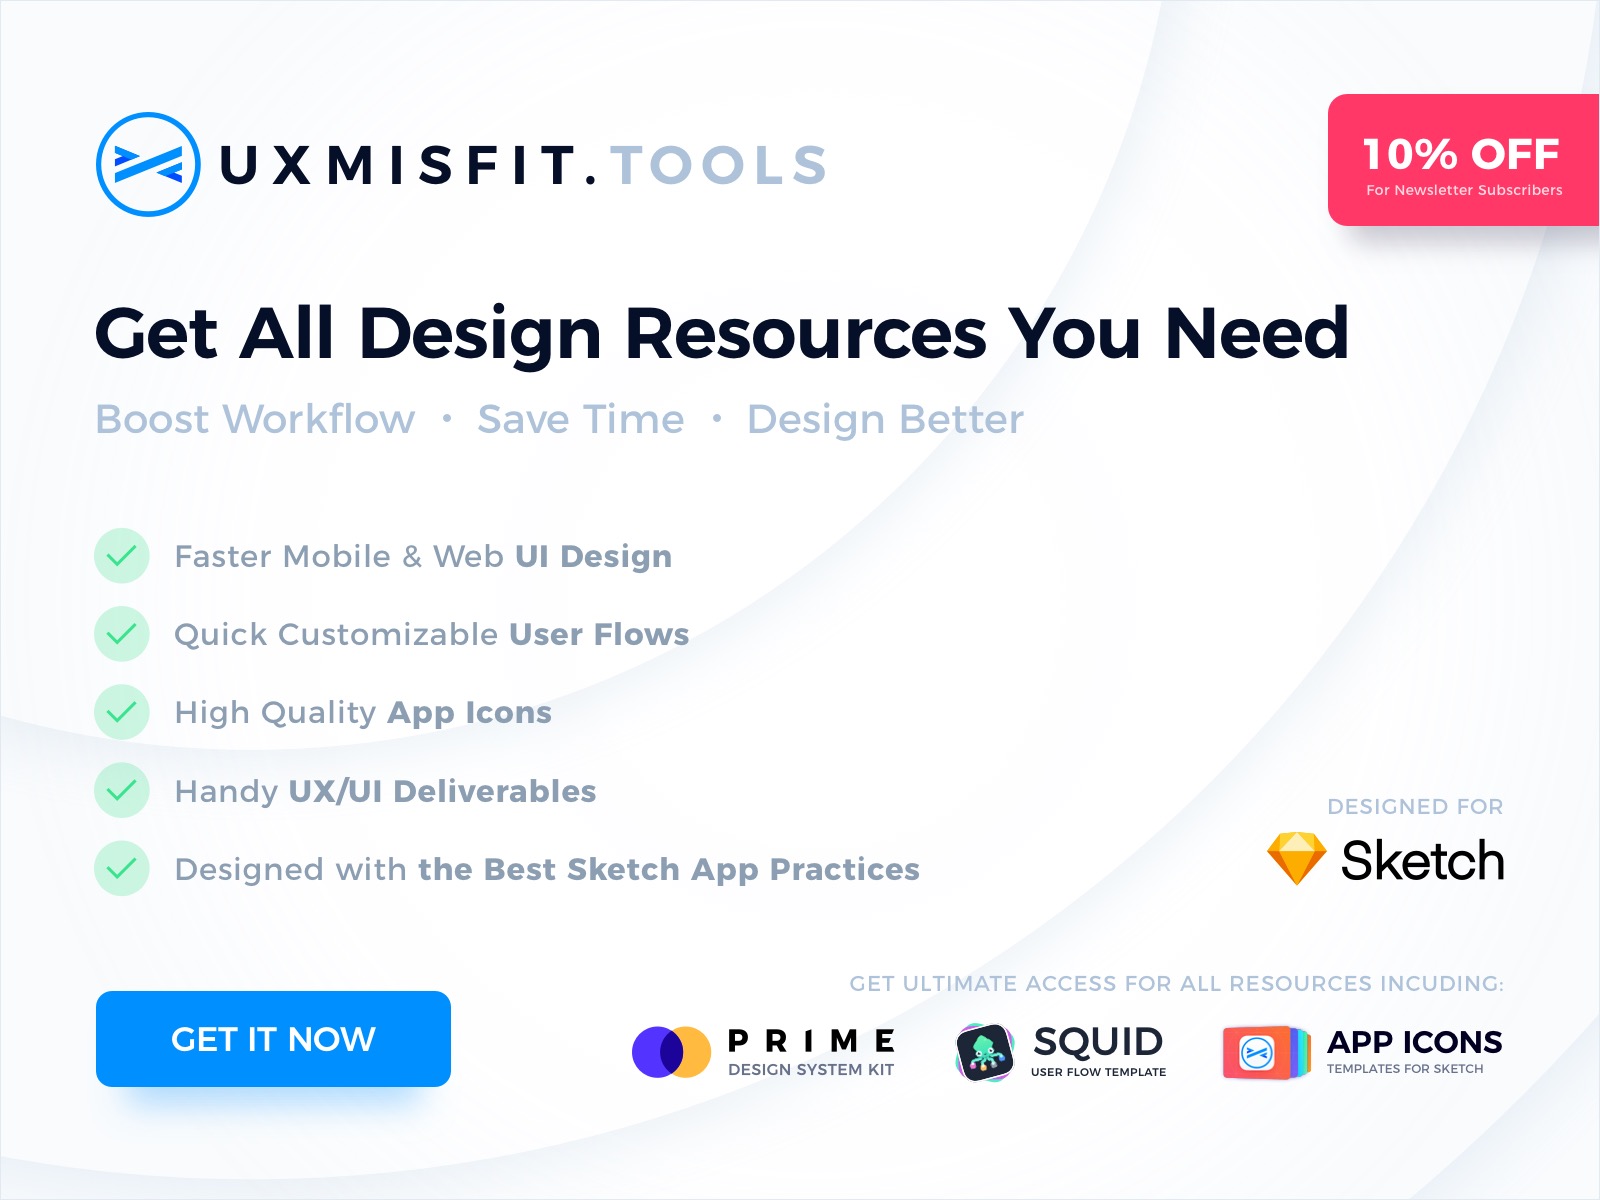 UX Misfit Tools